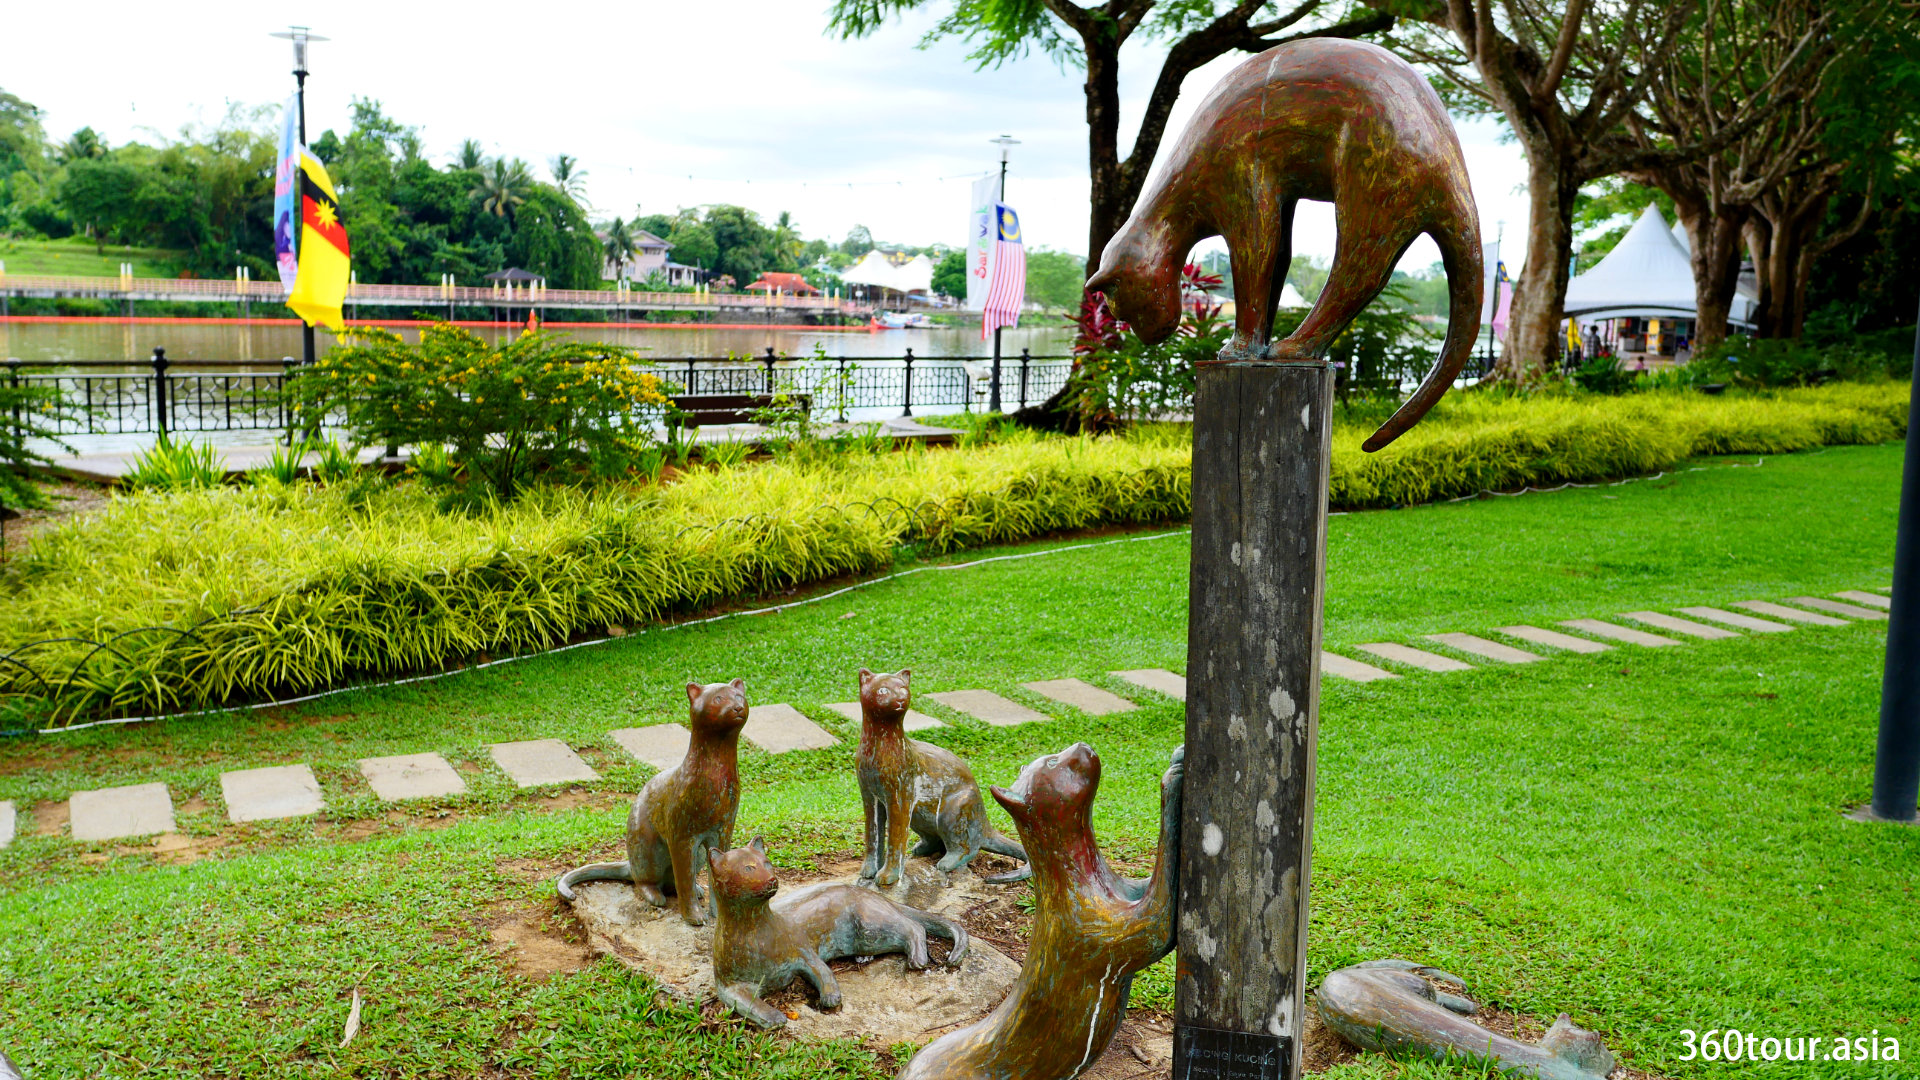 Kucing Kucing – The nine Bronze Cat Sculpture of Kuching Waterfront